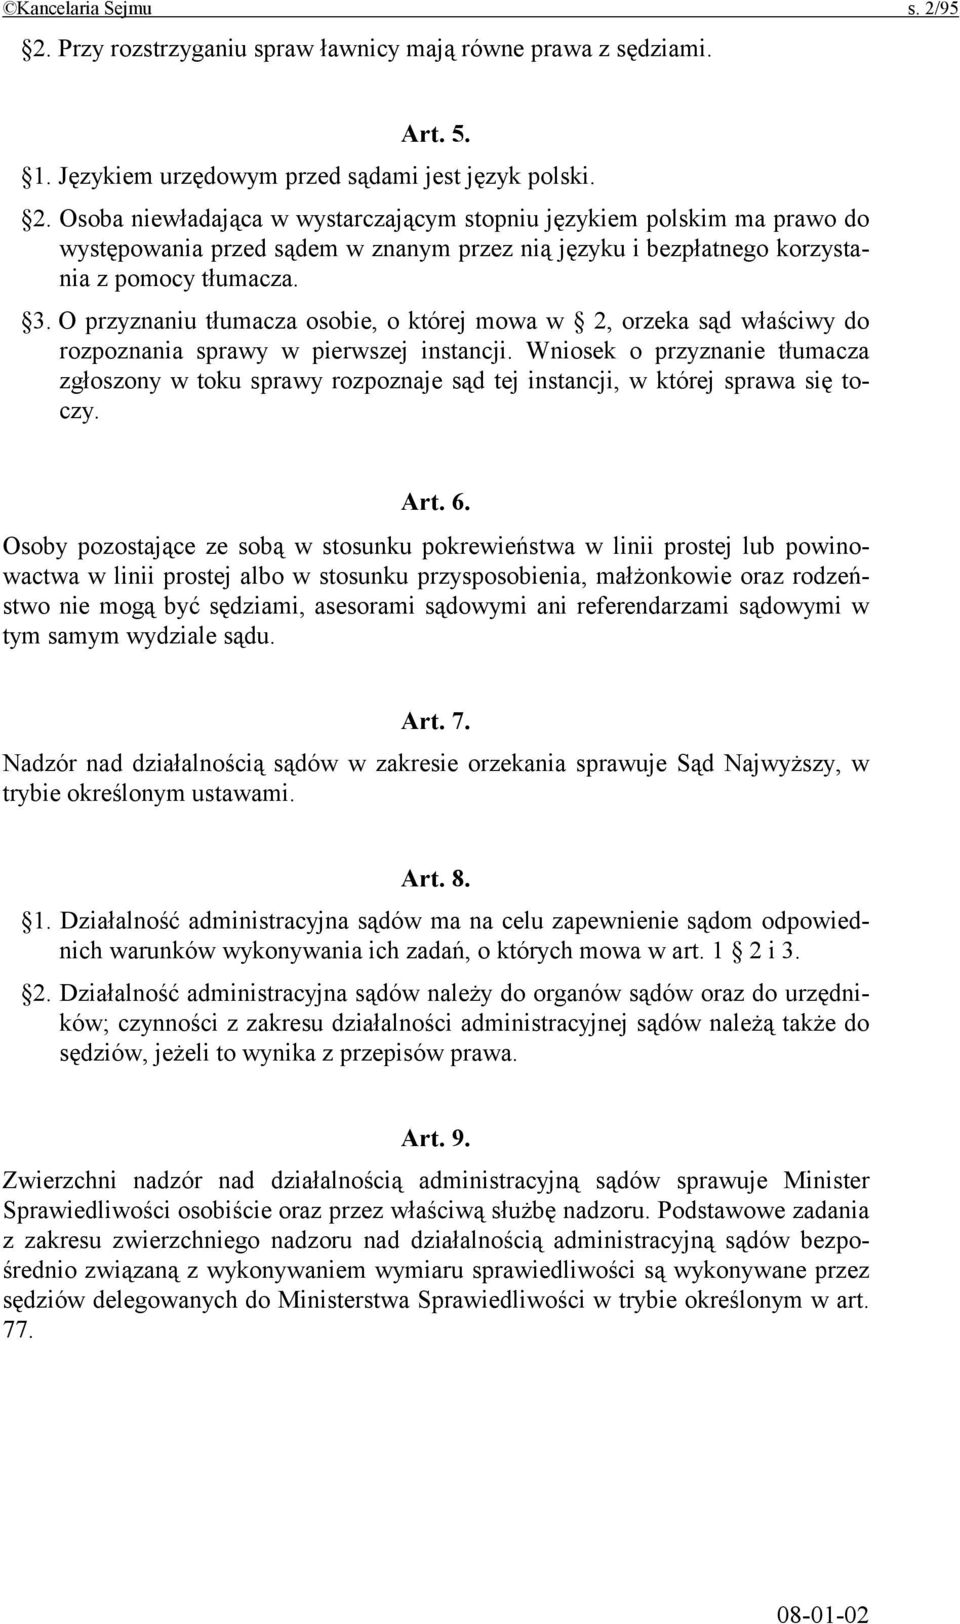 Wniosek o przyznanie tłumacza zgłoszony w toku sprawy rozpoznaje sąd tej instancji, w której sprawa się toczy. Art. 6.